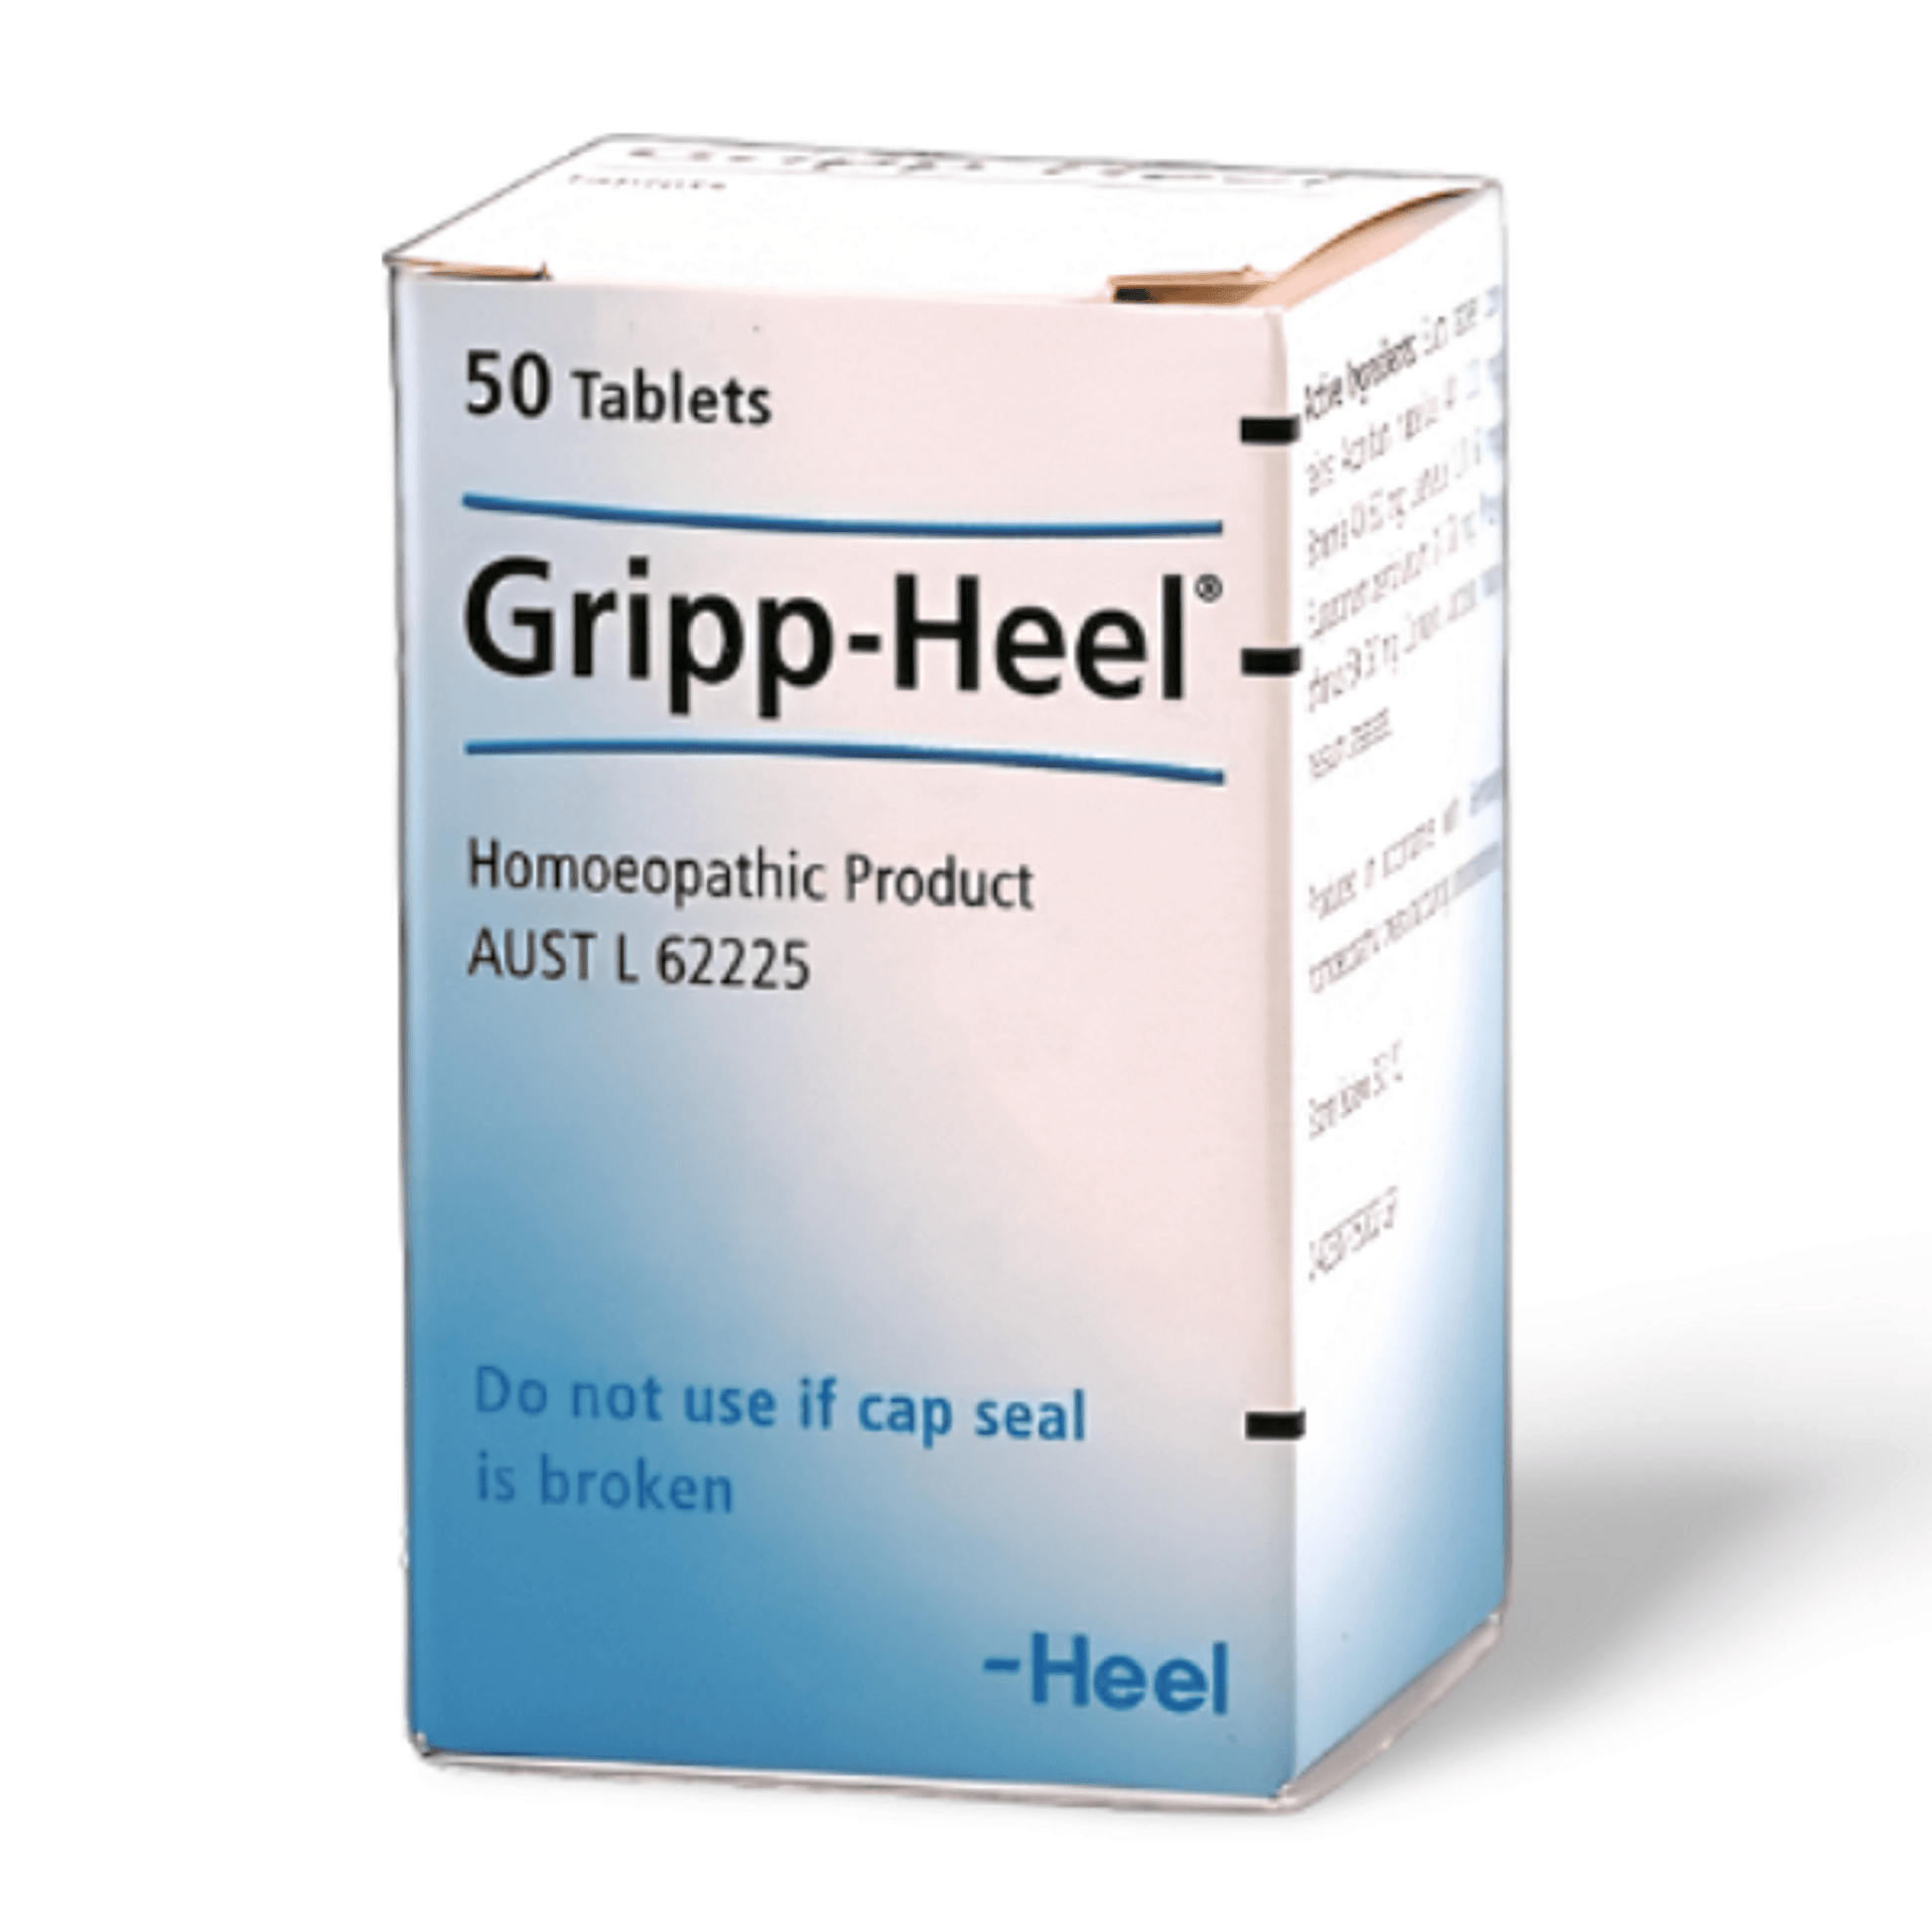 HEEL Gripp Heel - THE GOOD STUFF